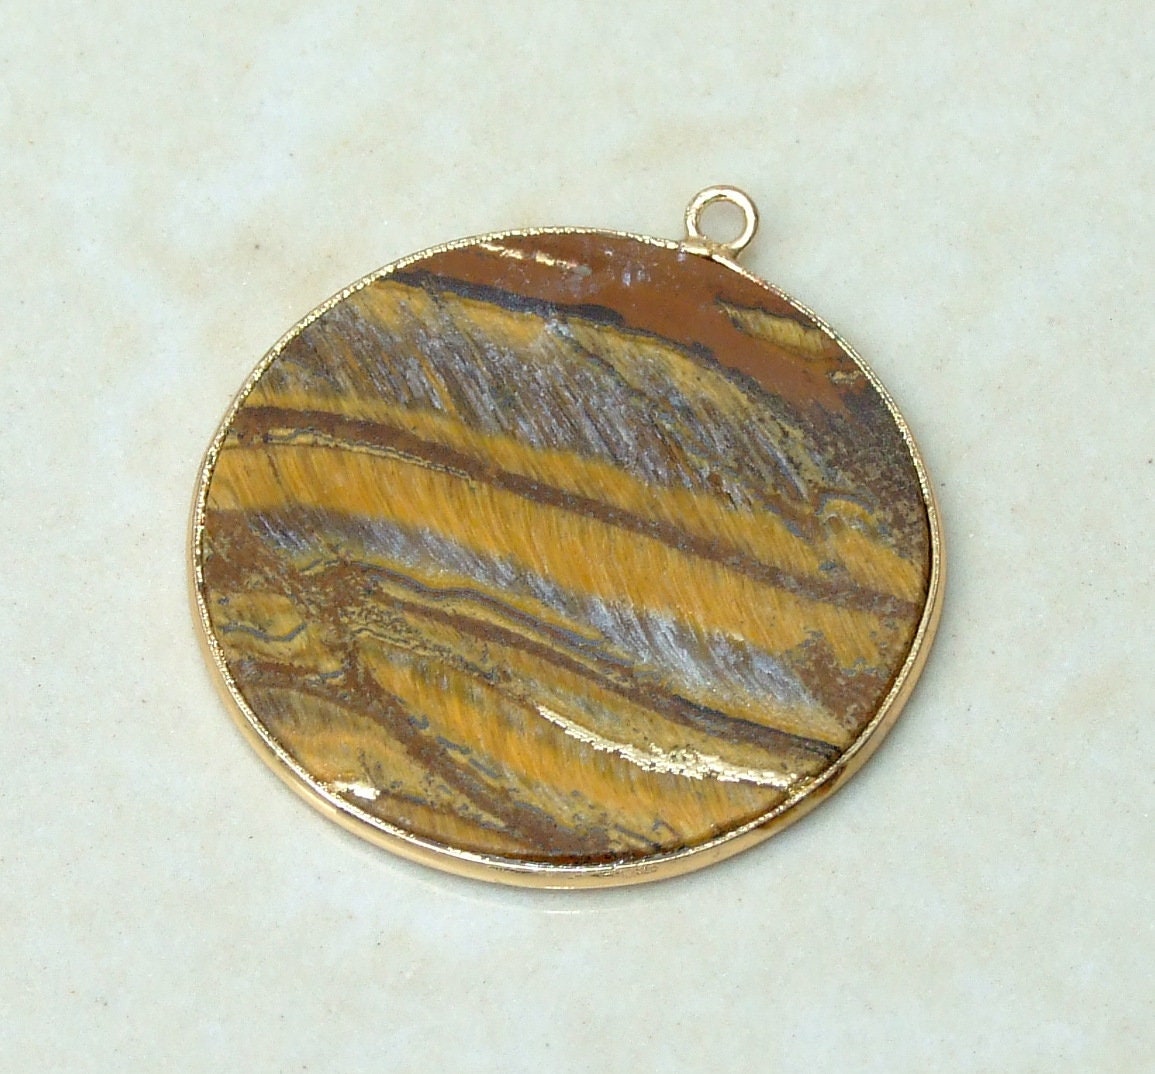 Tiger Eye Pendant, Gemstone Pendant, Thin Slice Pendant, Highly Polished, Round, Gold Bezel, Jewelry Necklace Pendant, 30mm